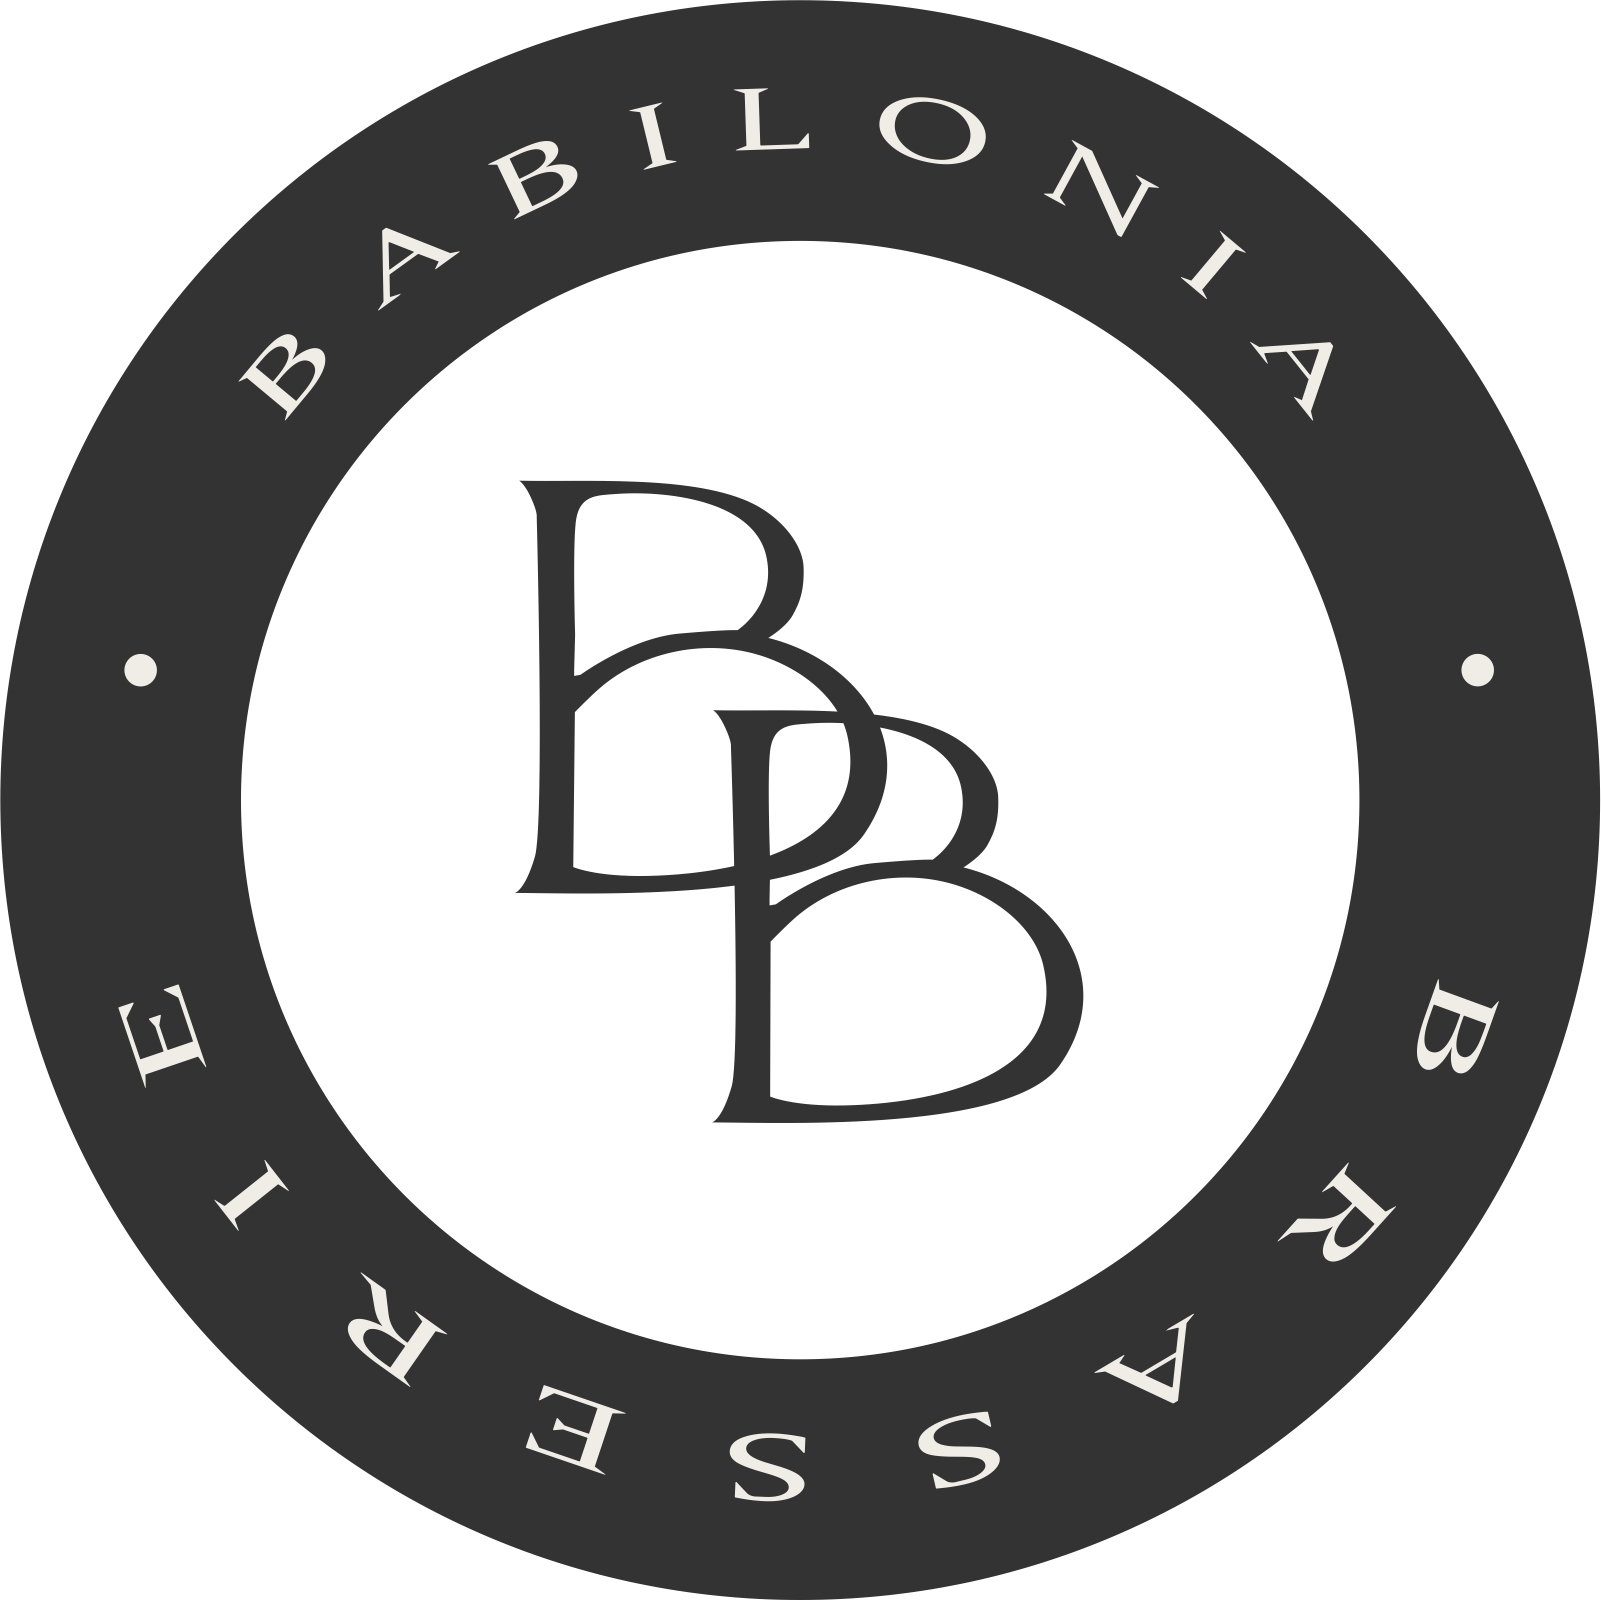 Brasserie Babilonia